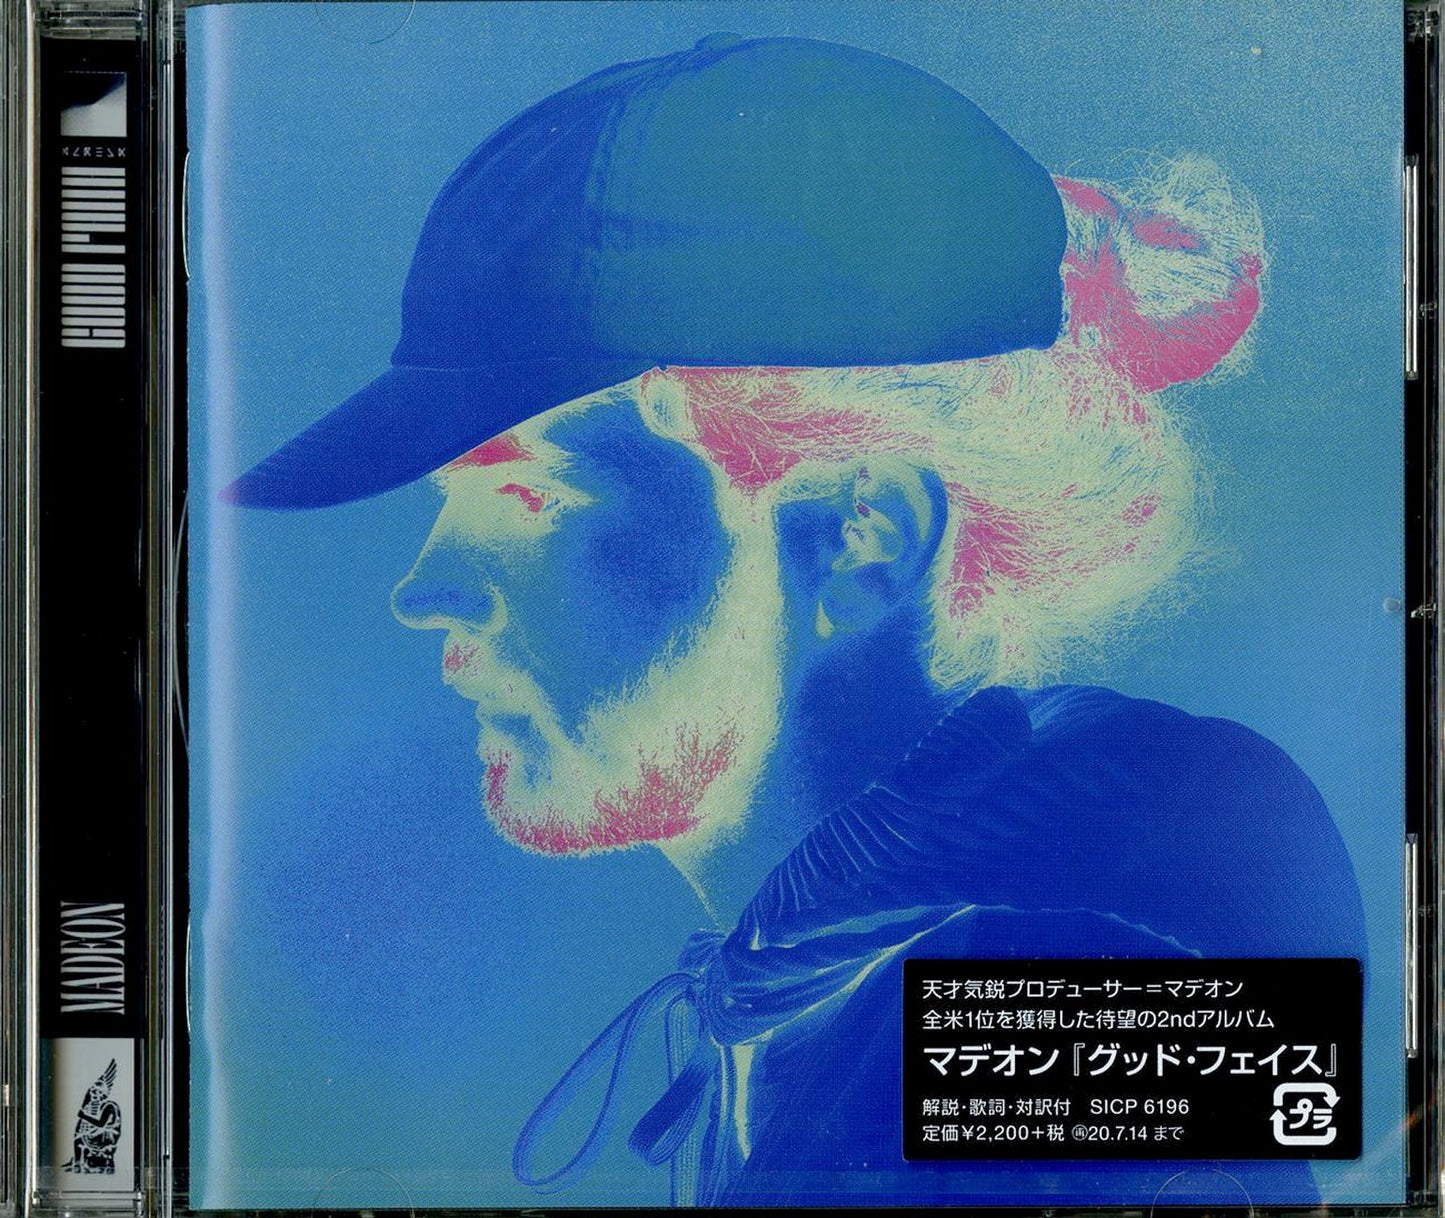 Madeon - Good Faith - Japan CD